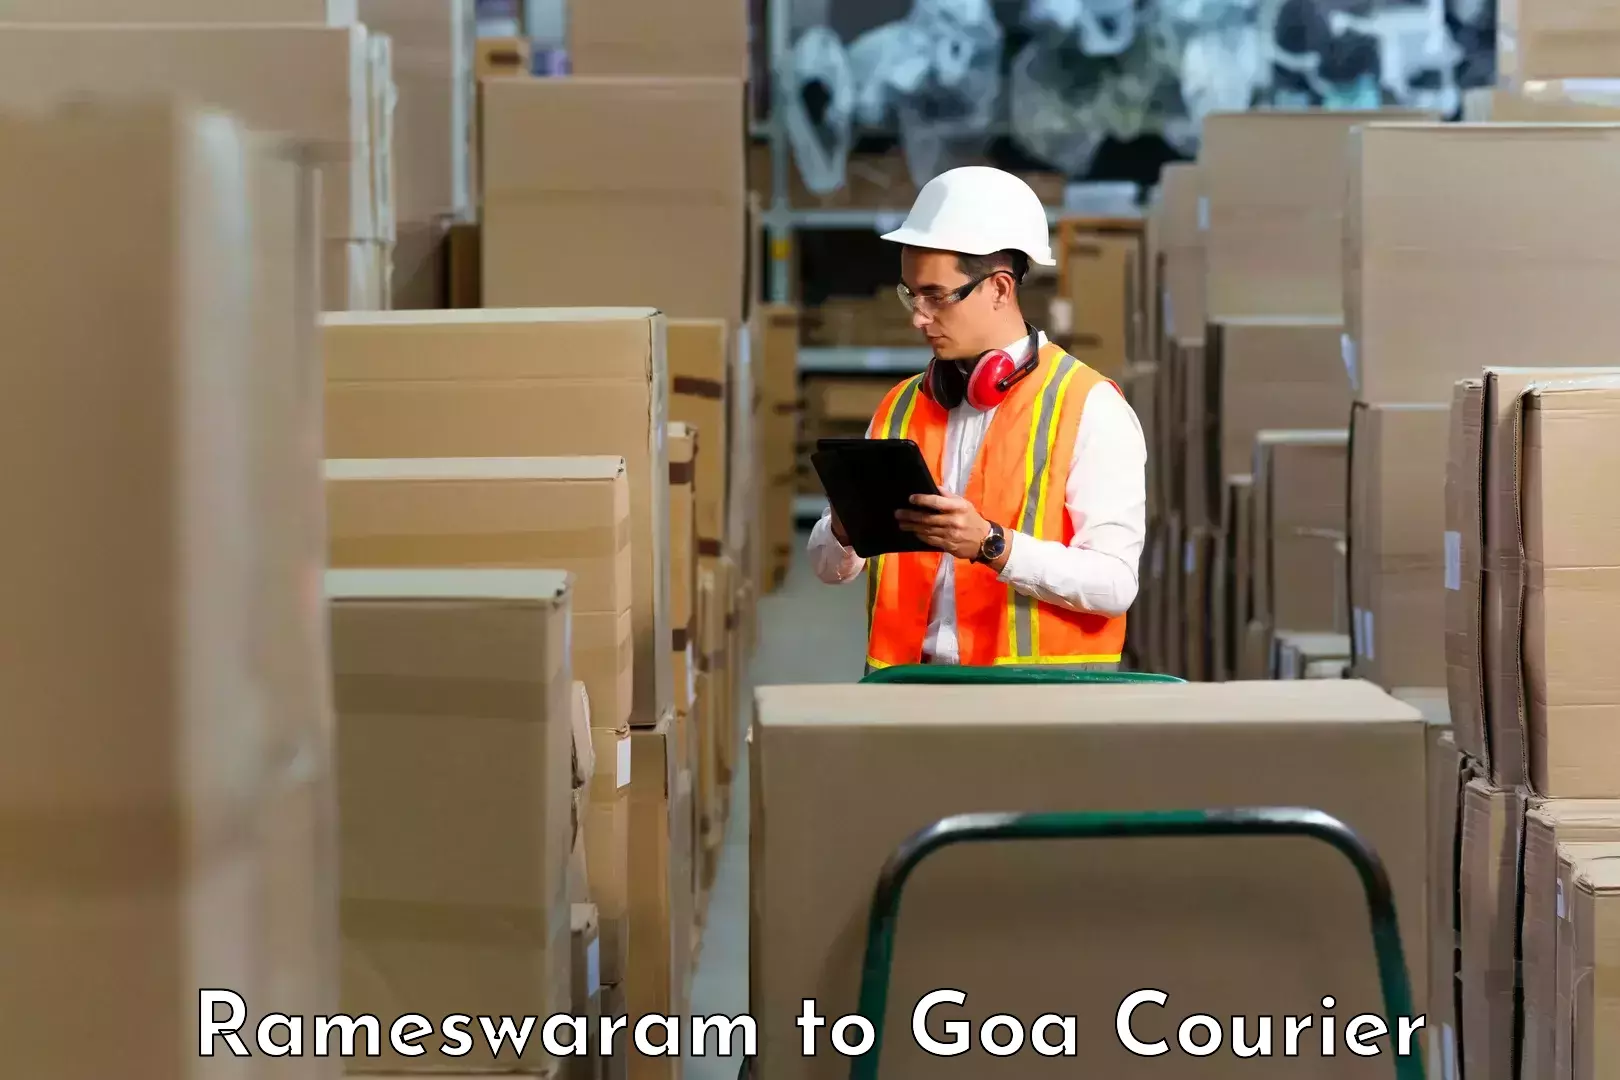 Courier services Rameswaram to Vasco da Gama